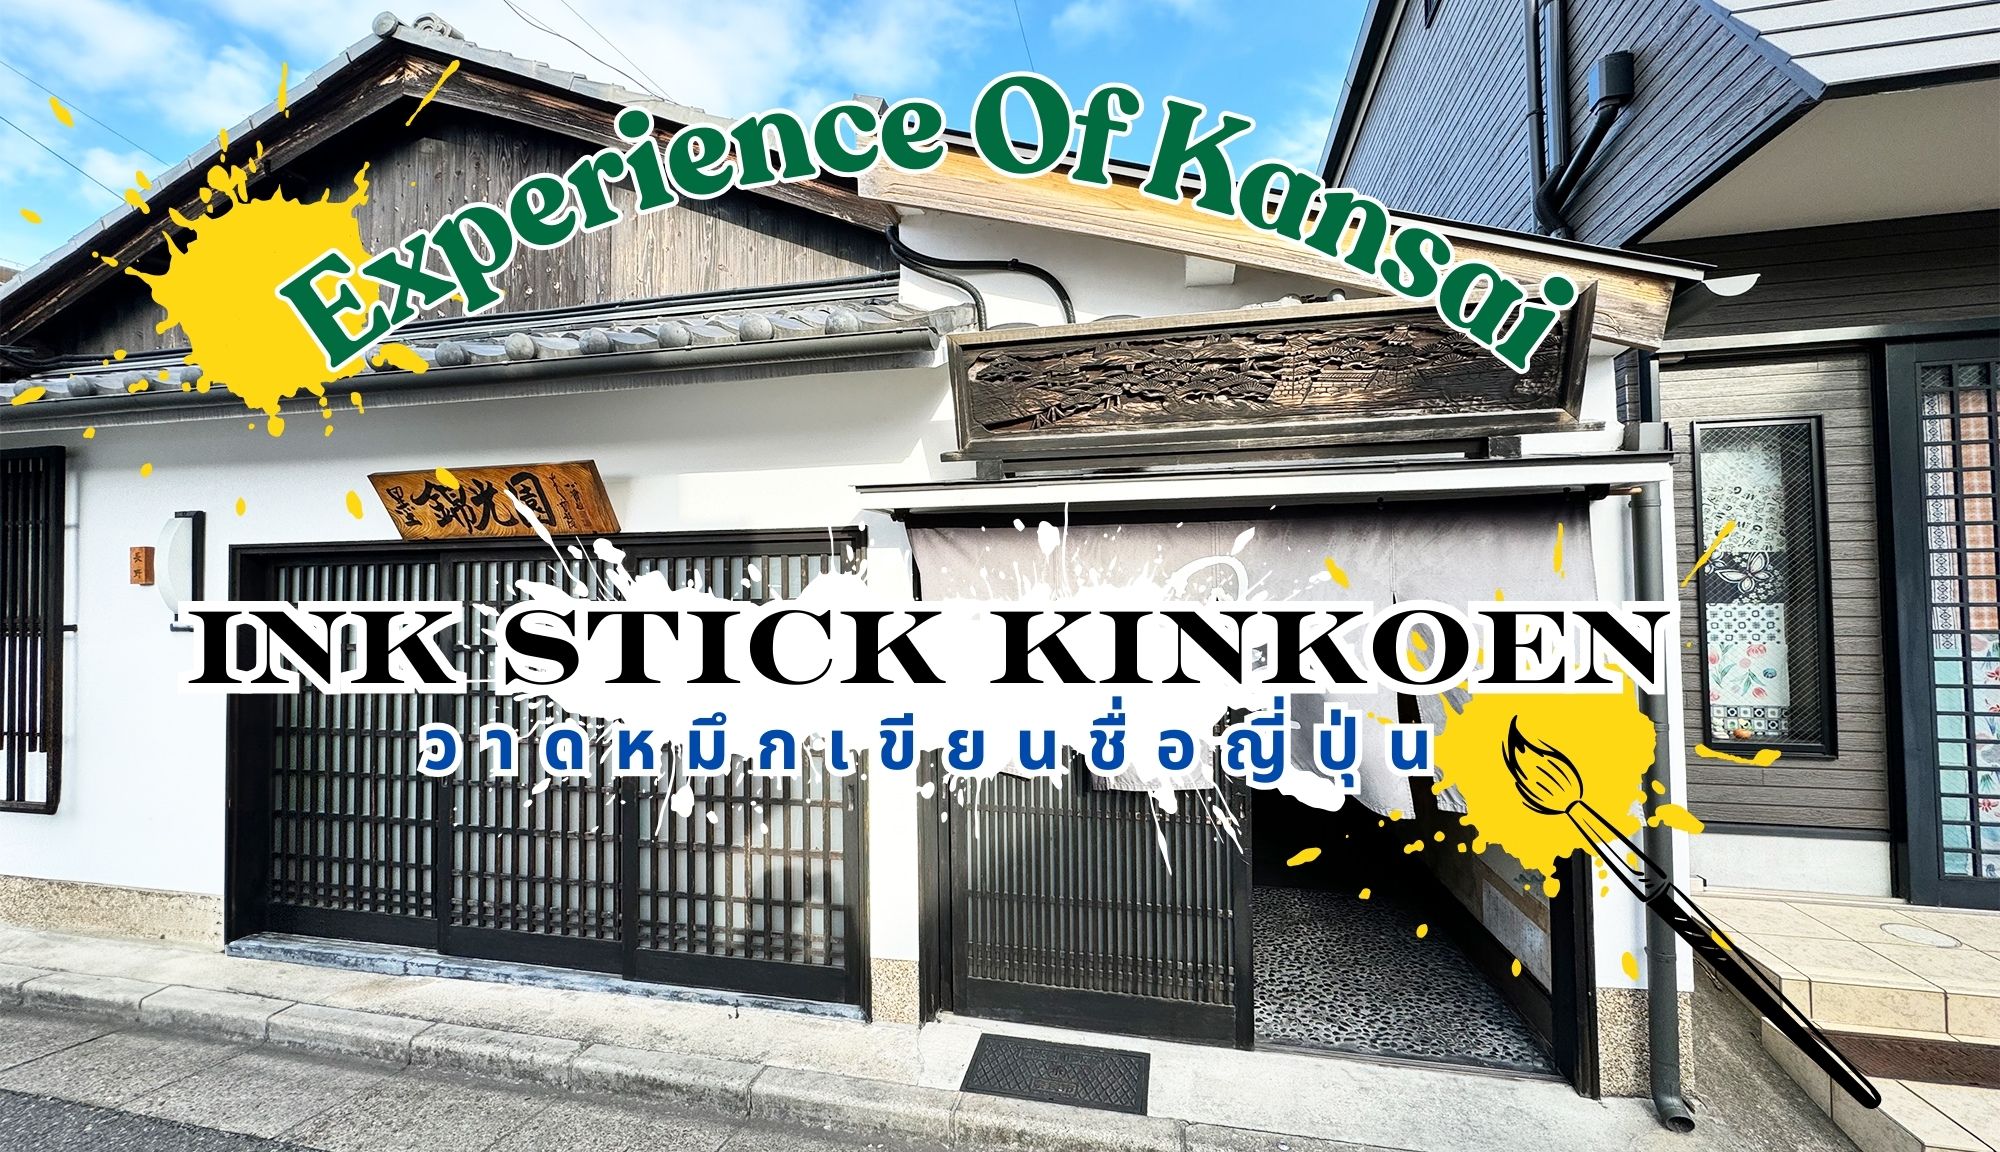 Ink Stick kinkoen Workshop in Kansai : กิจกรรมอวดหมึกที่คันไซ เขียนหมึกฉบับต้นตำหรับ !!!